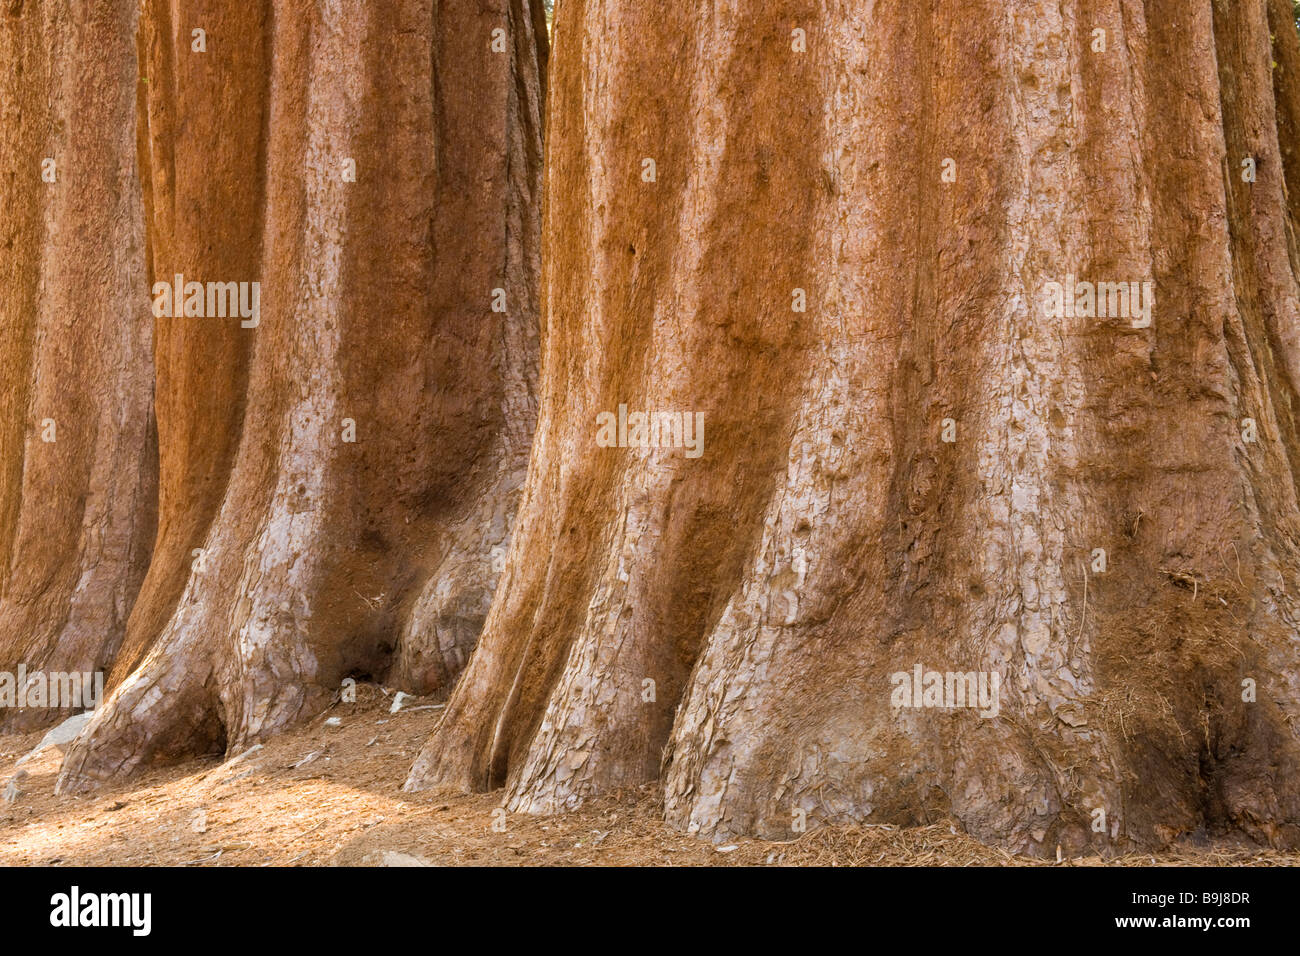 Trunks of Giant Sequoias (Sequoiadendron giganteum), Giant Forest, Sequoia National Park, California, USA Stock Photo